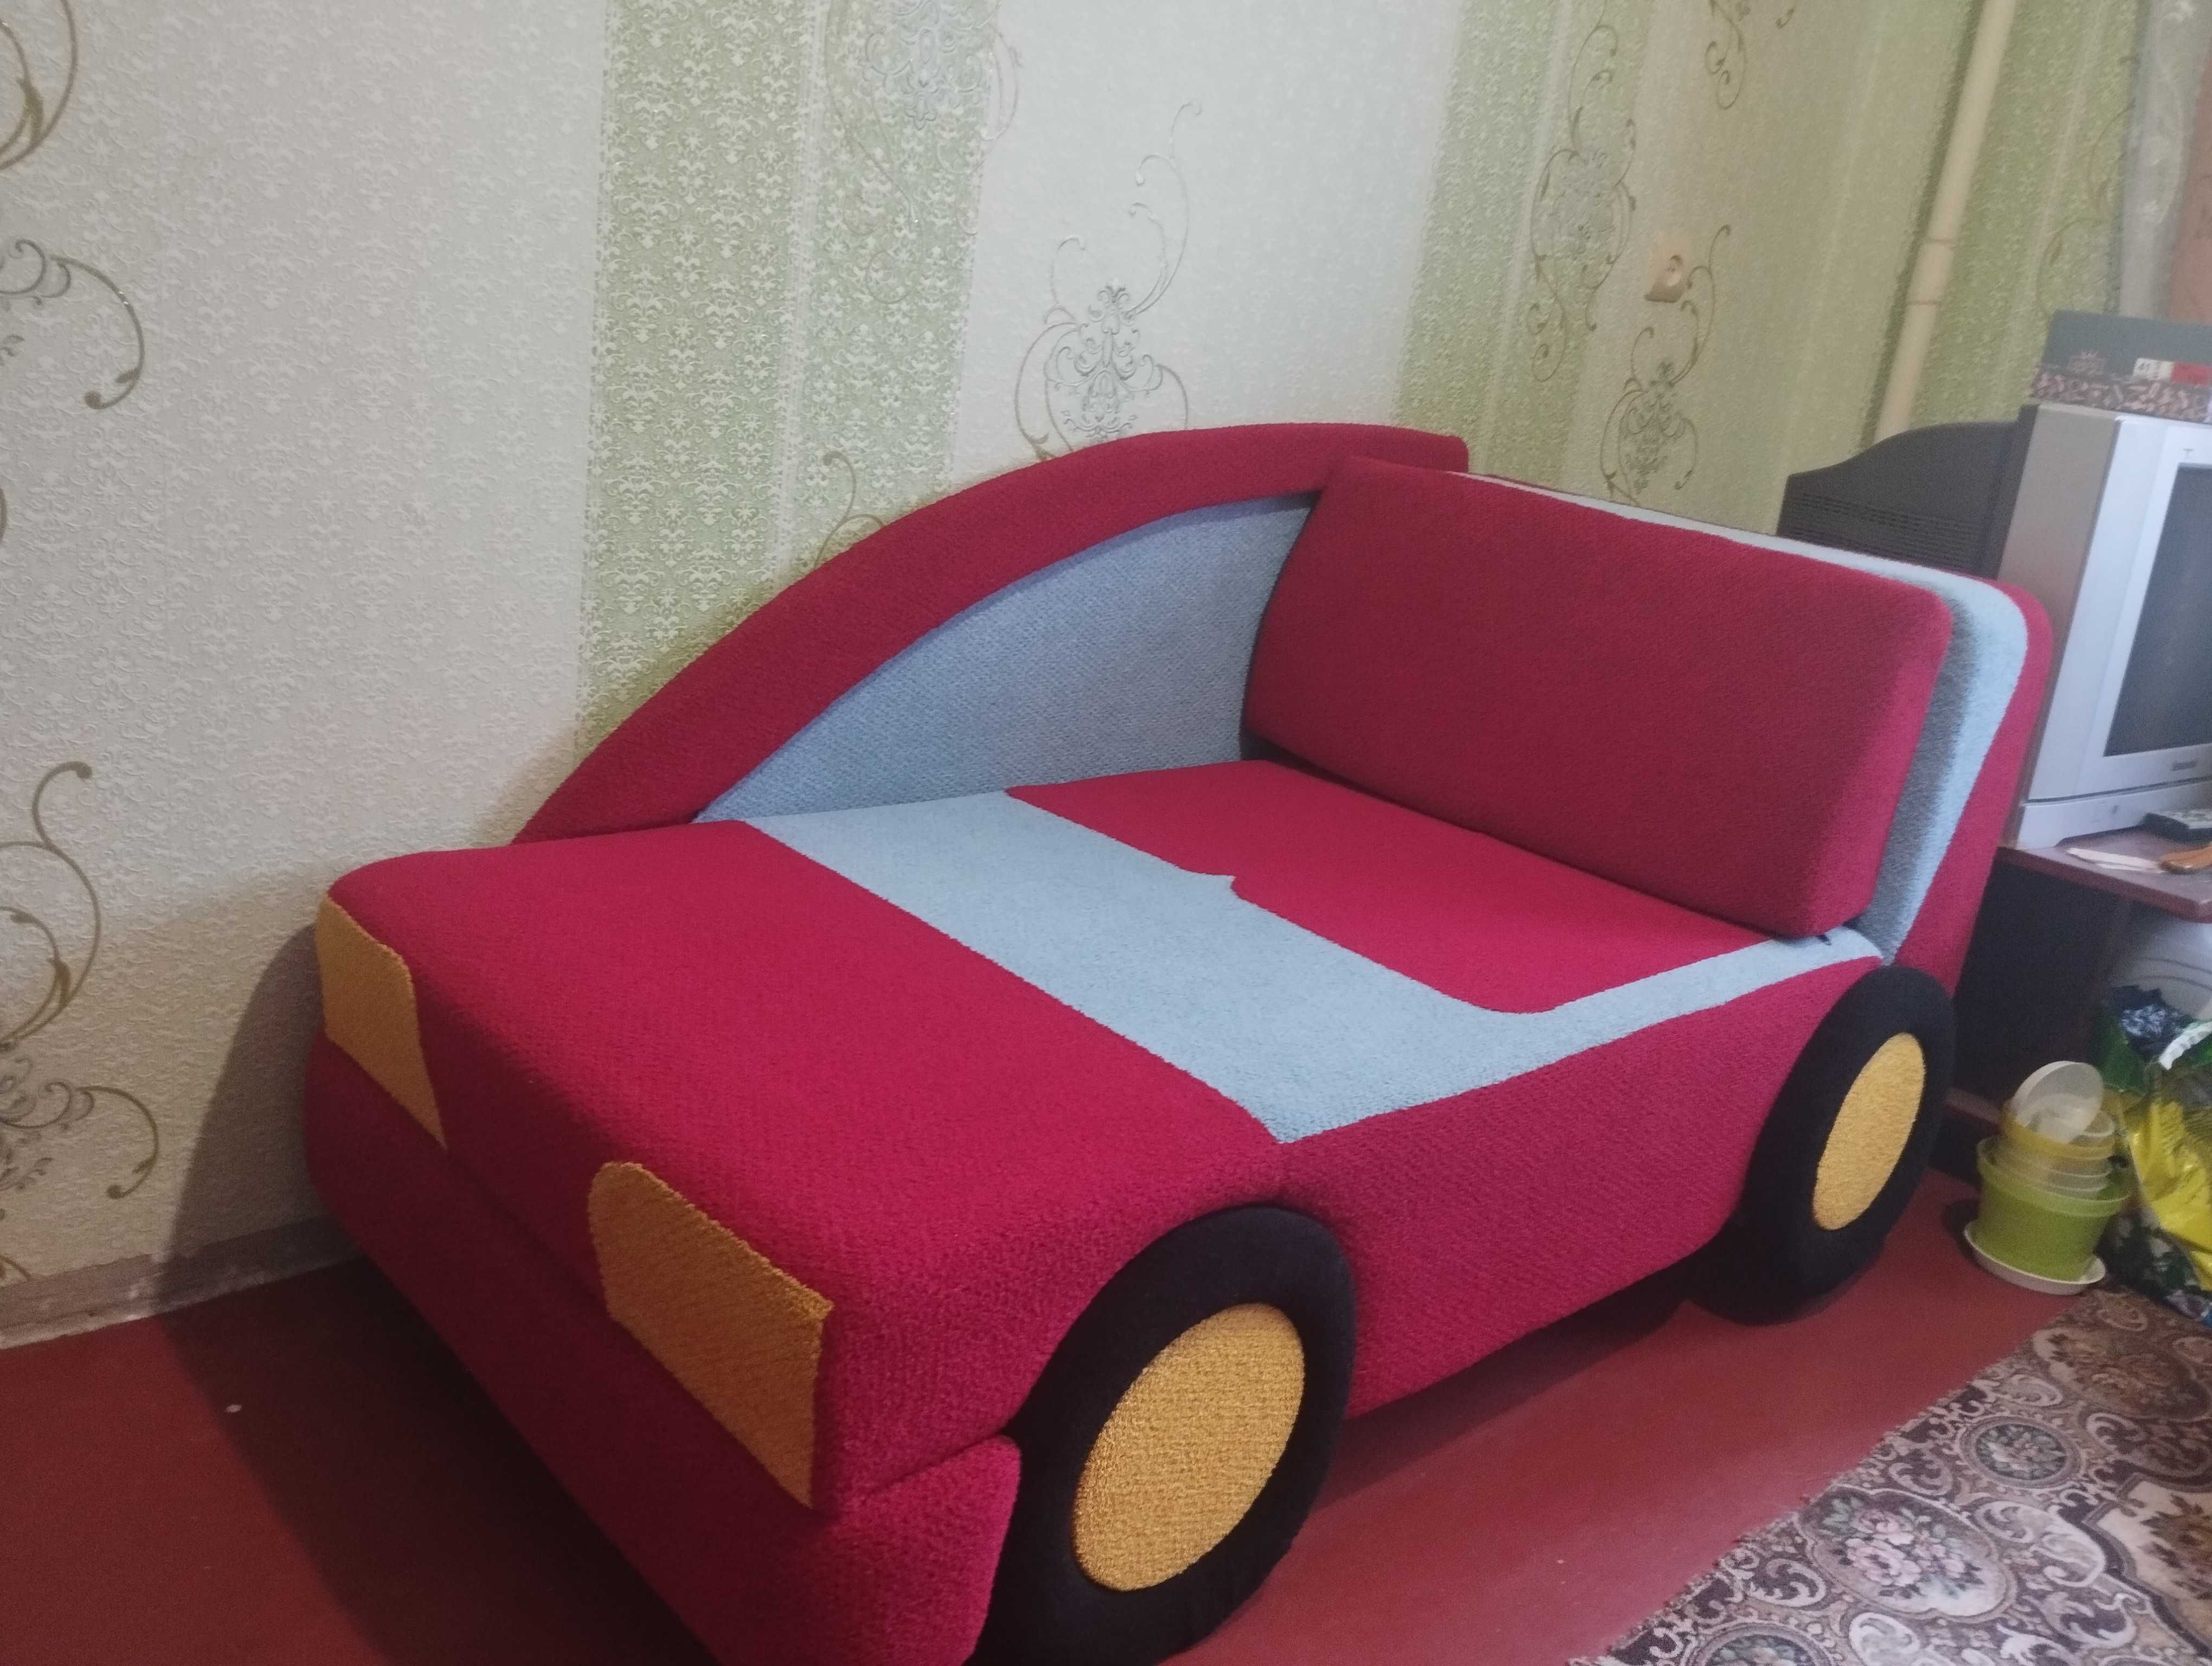 Продам роскладной детский диван-машинку б/у в отличном состоянии